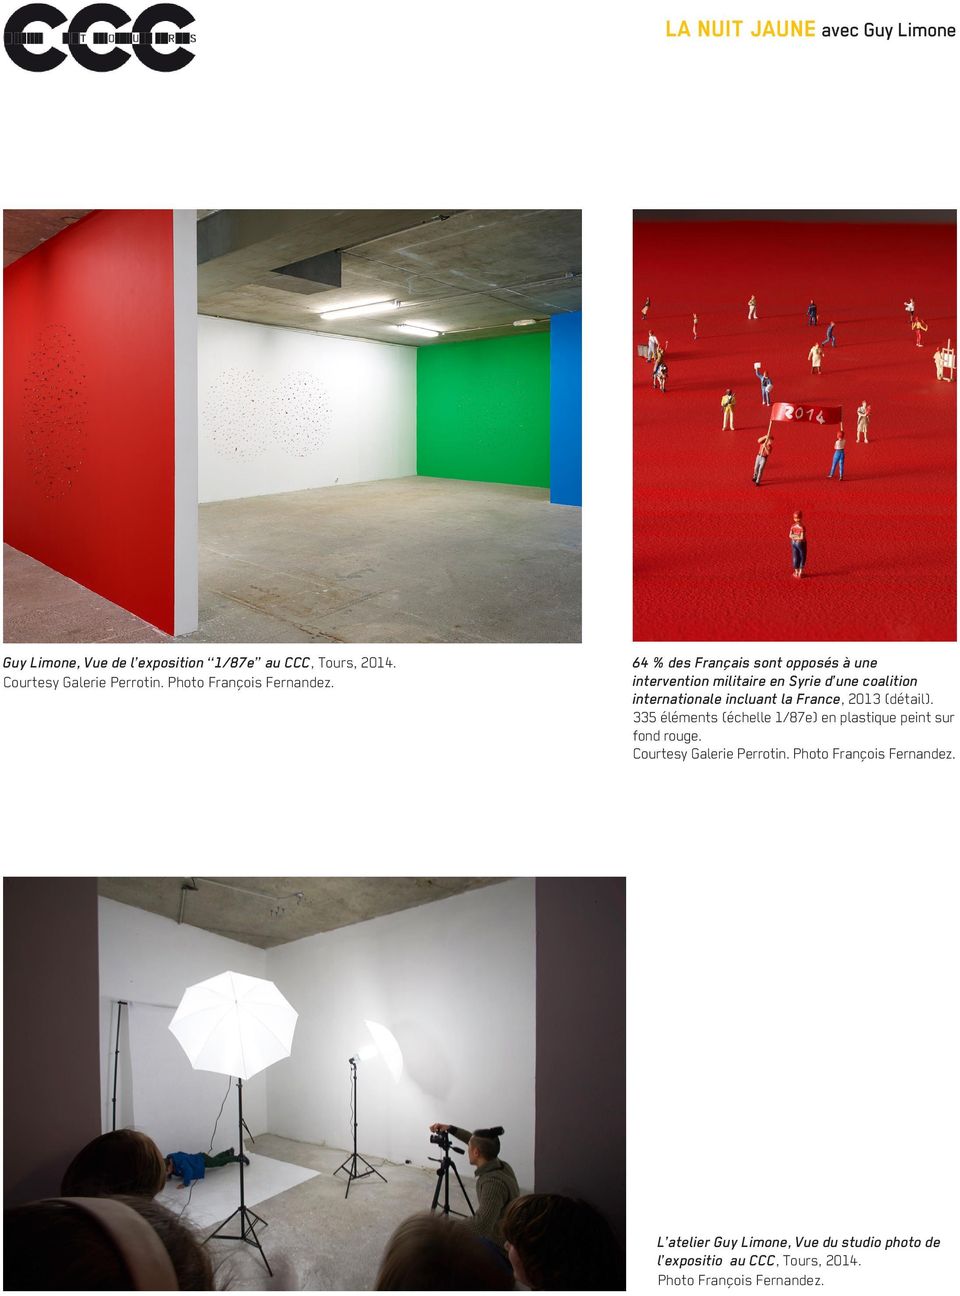 France, 2013 (détail). 335 éléments (échelle 1/87e) en plastique peint sur fond rouge. Courtesy Galerie Perrotin.